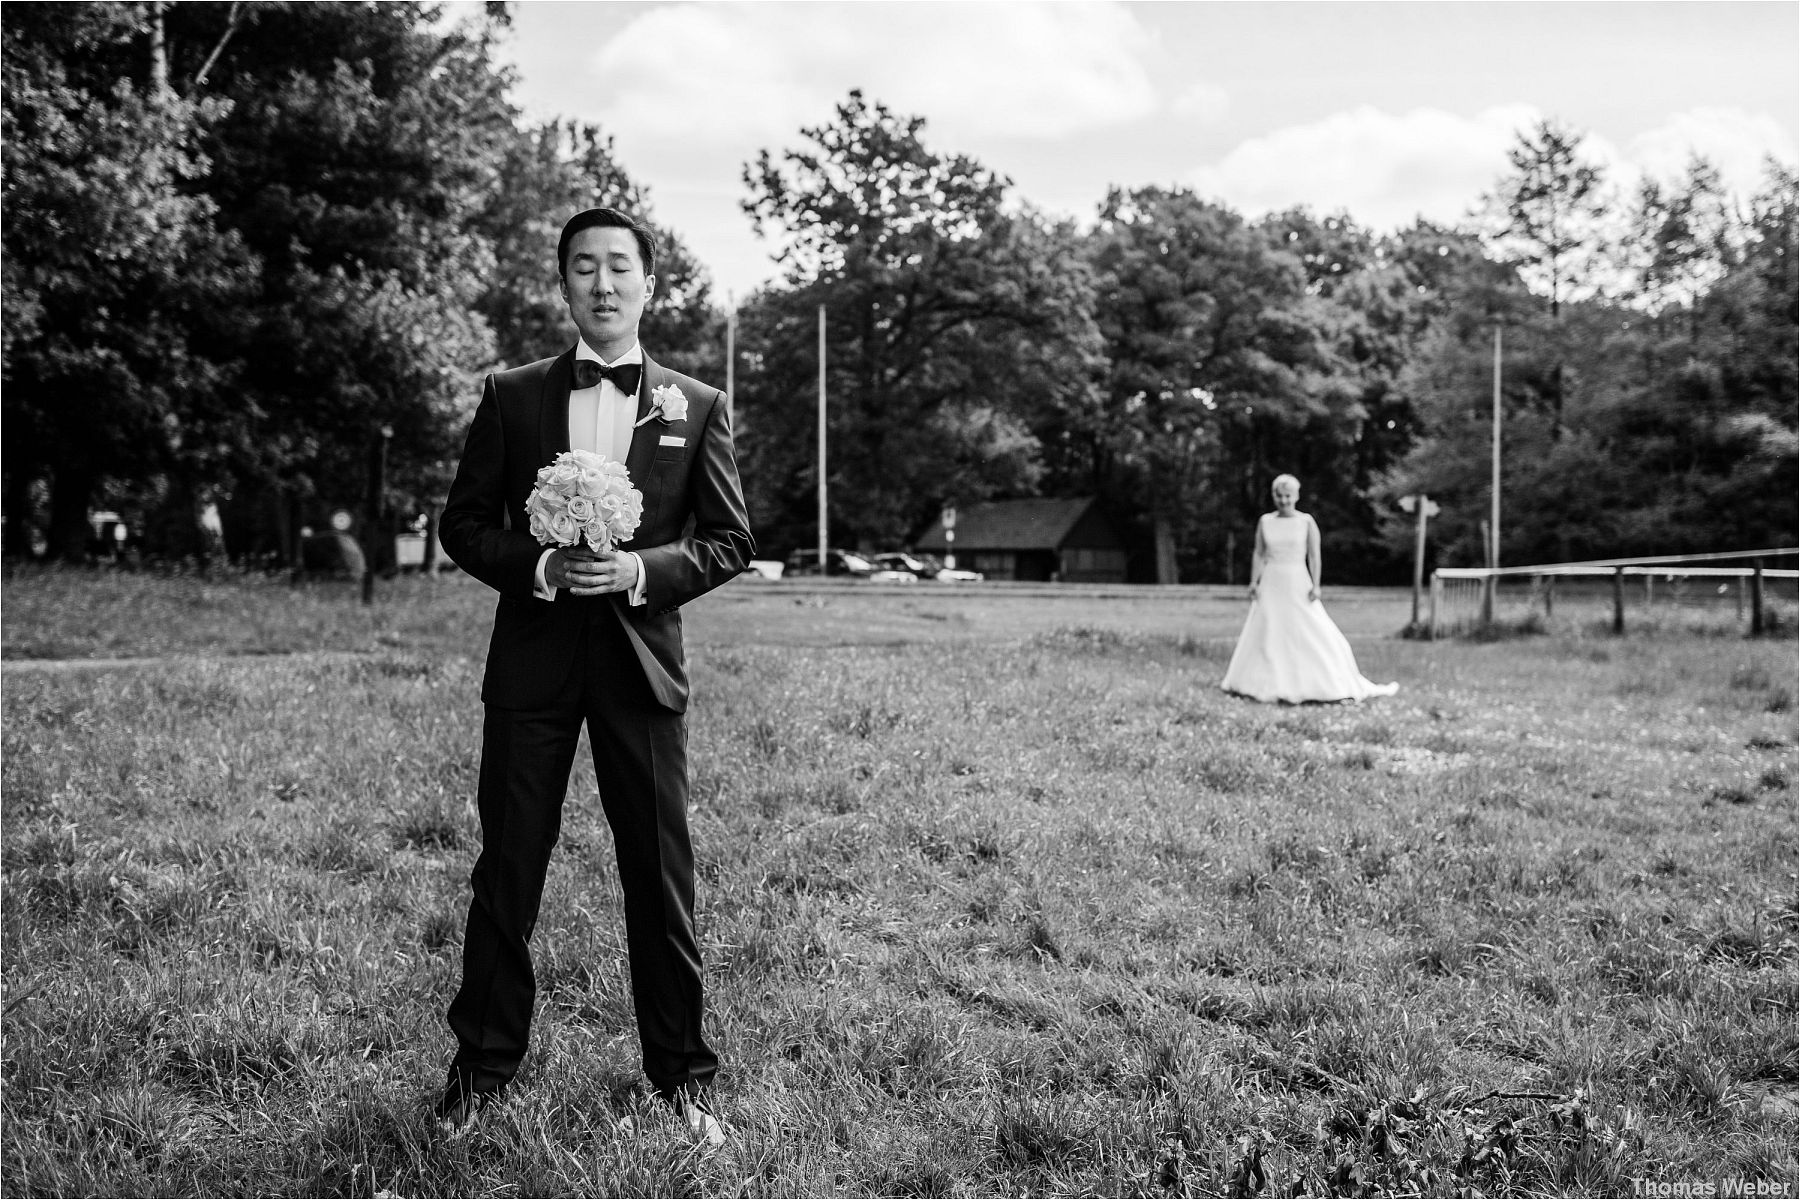 Hochzeitsfotograf Thomas Weber aus Oldenburg: Hochzeitsreportage in Rastede